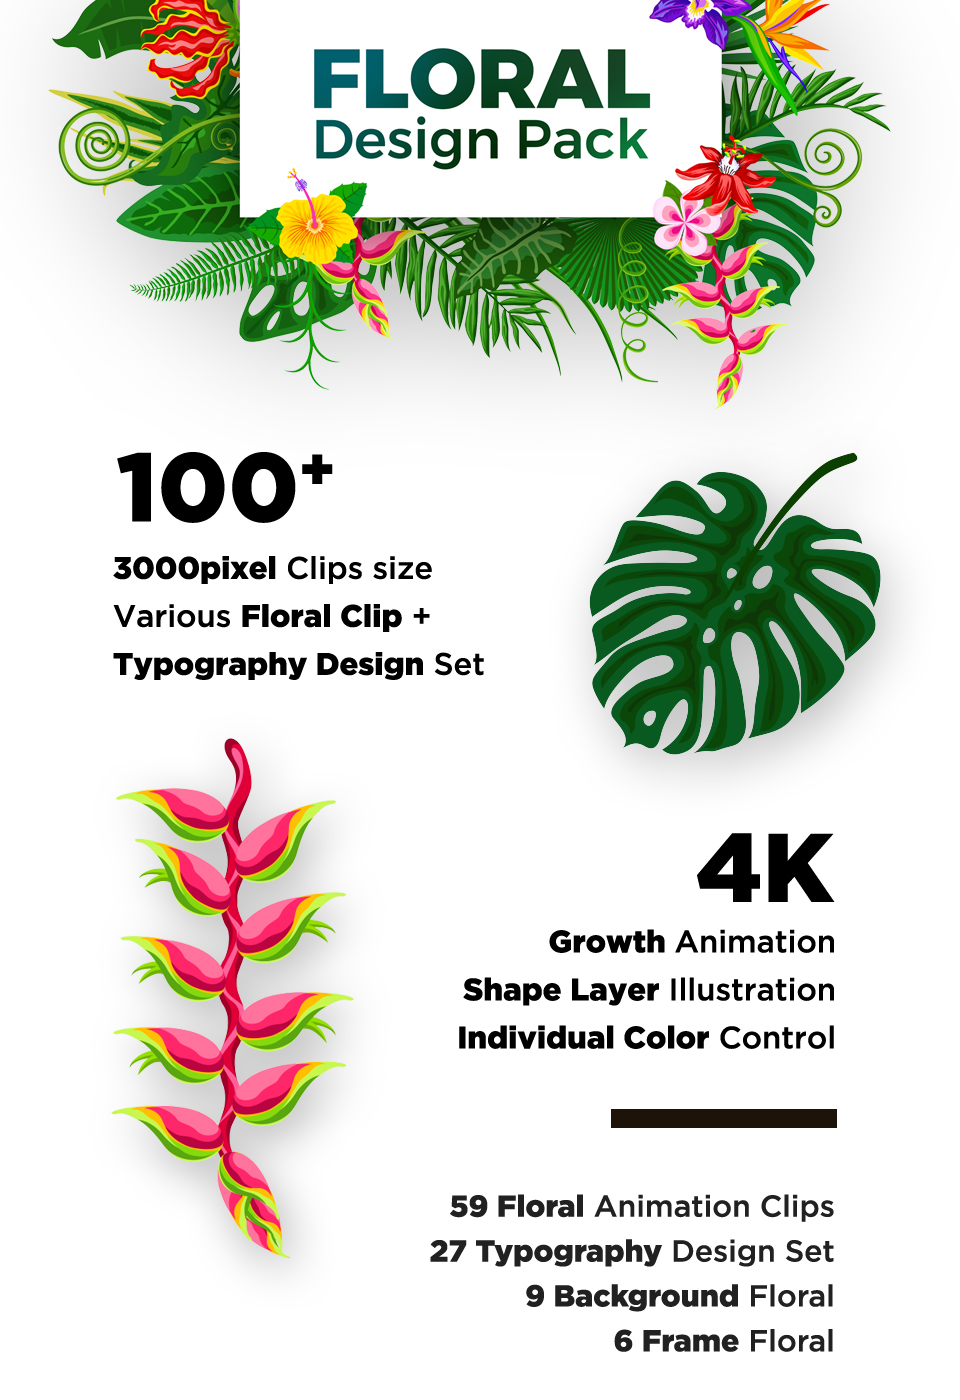 Floral Design Pack - 1